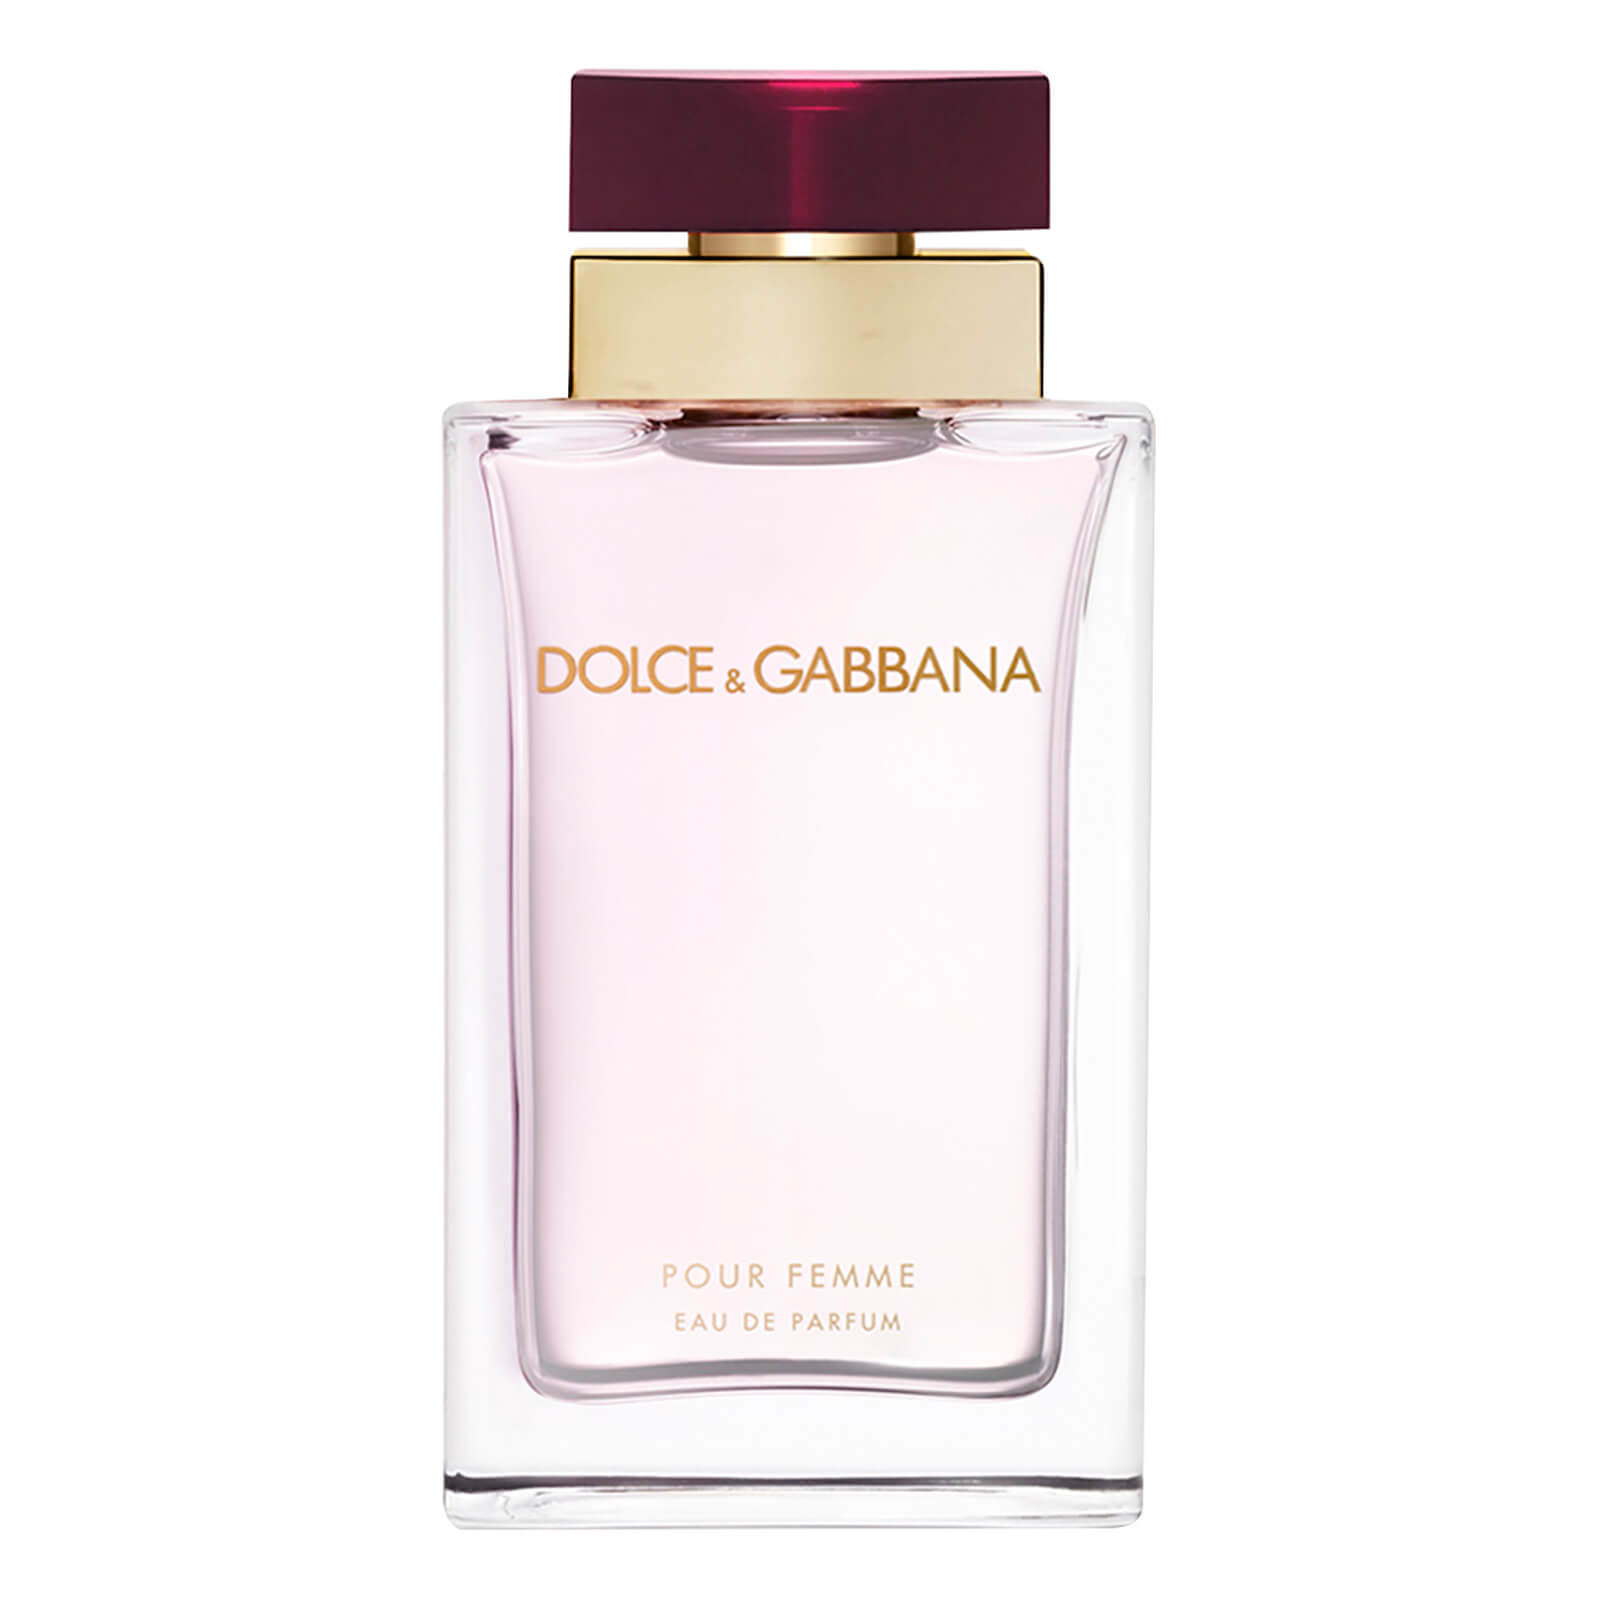 Dolce&Gabbana Pour Femme Eau de Parfum – 25ml